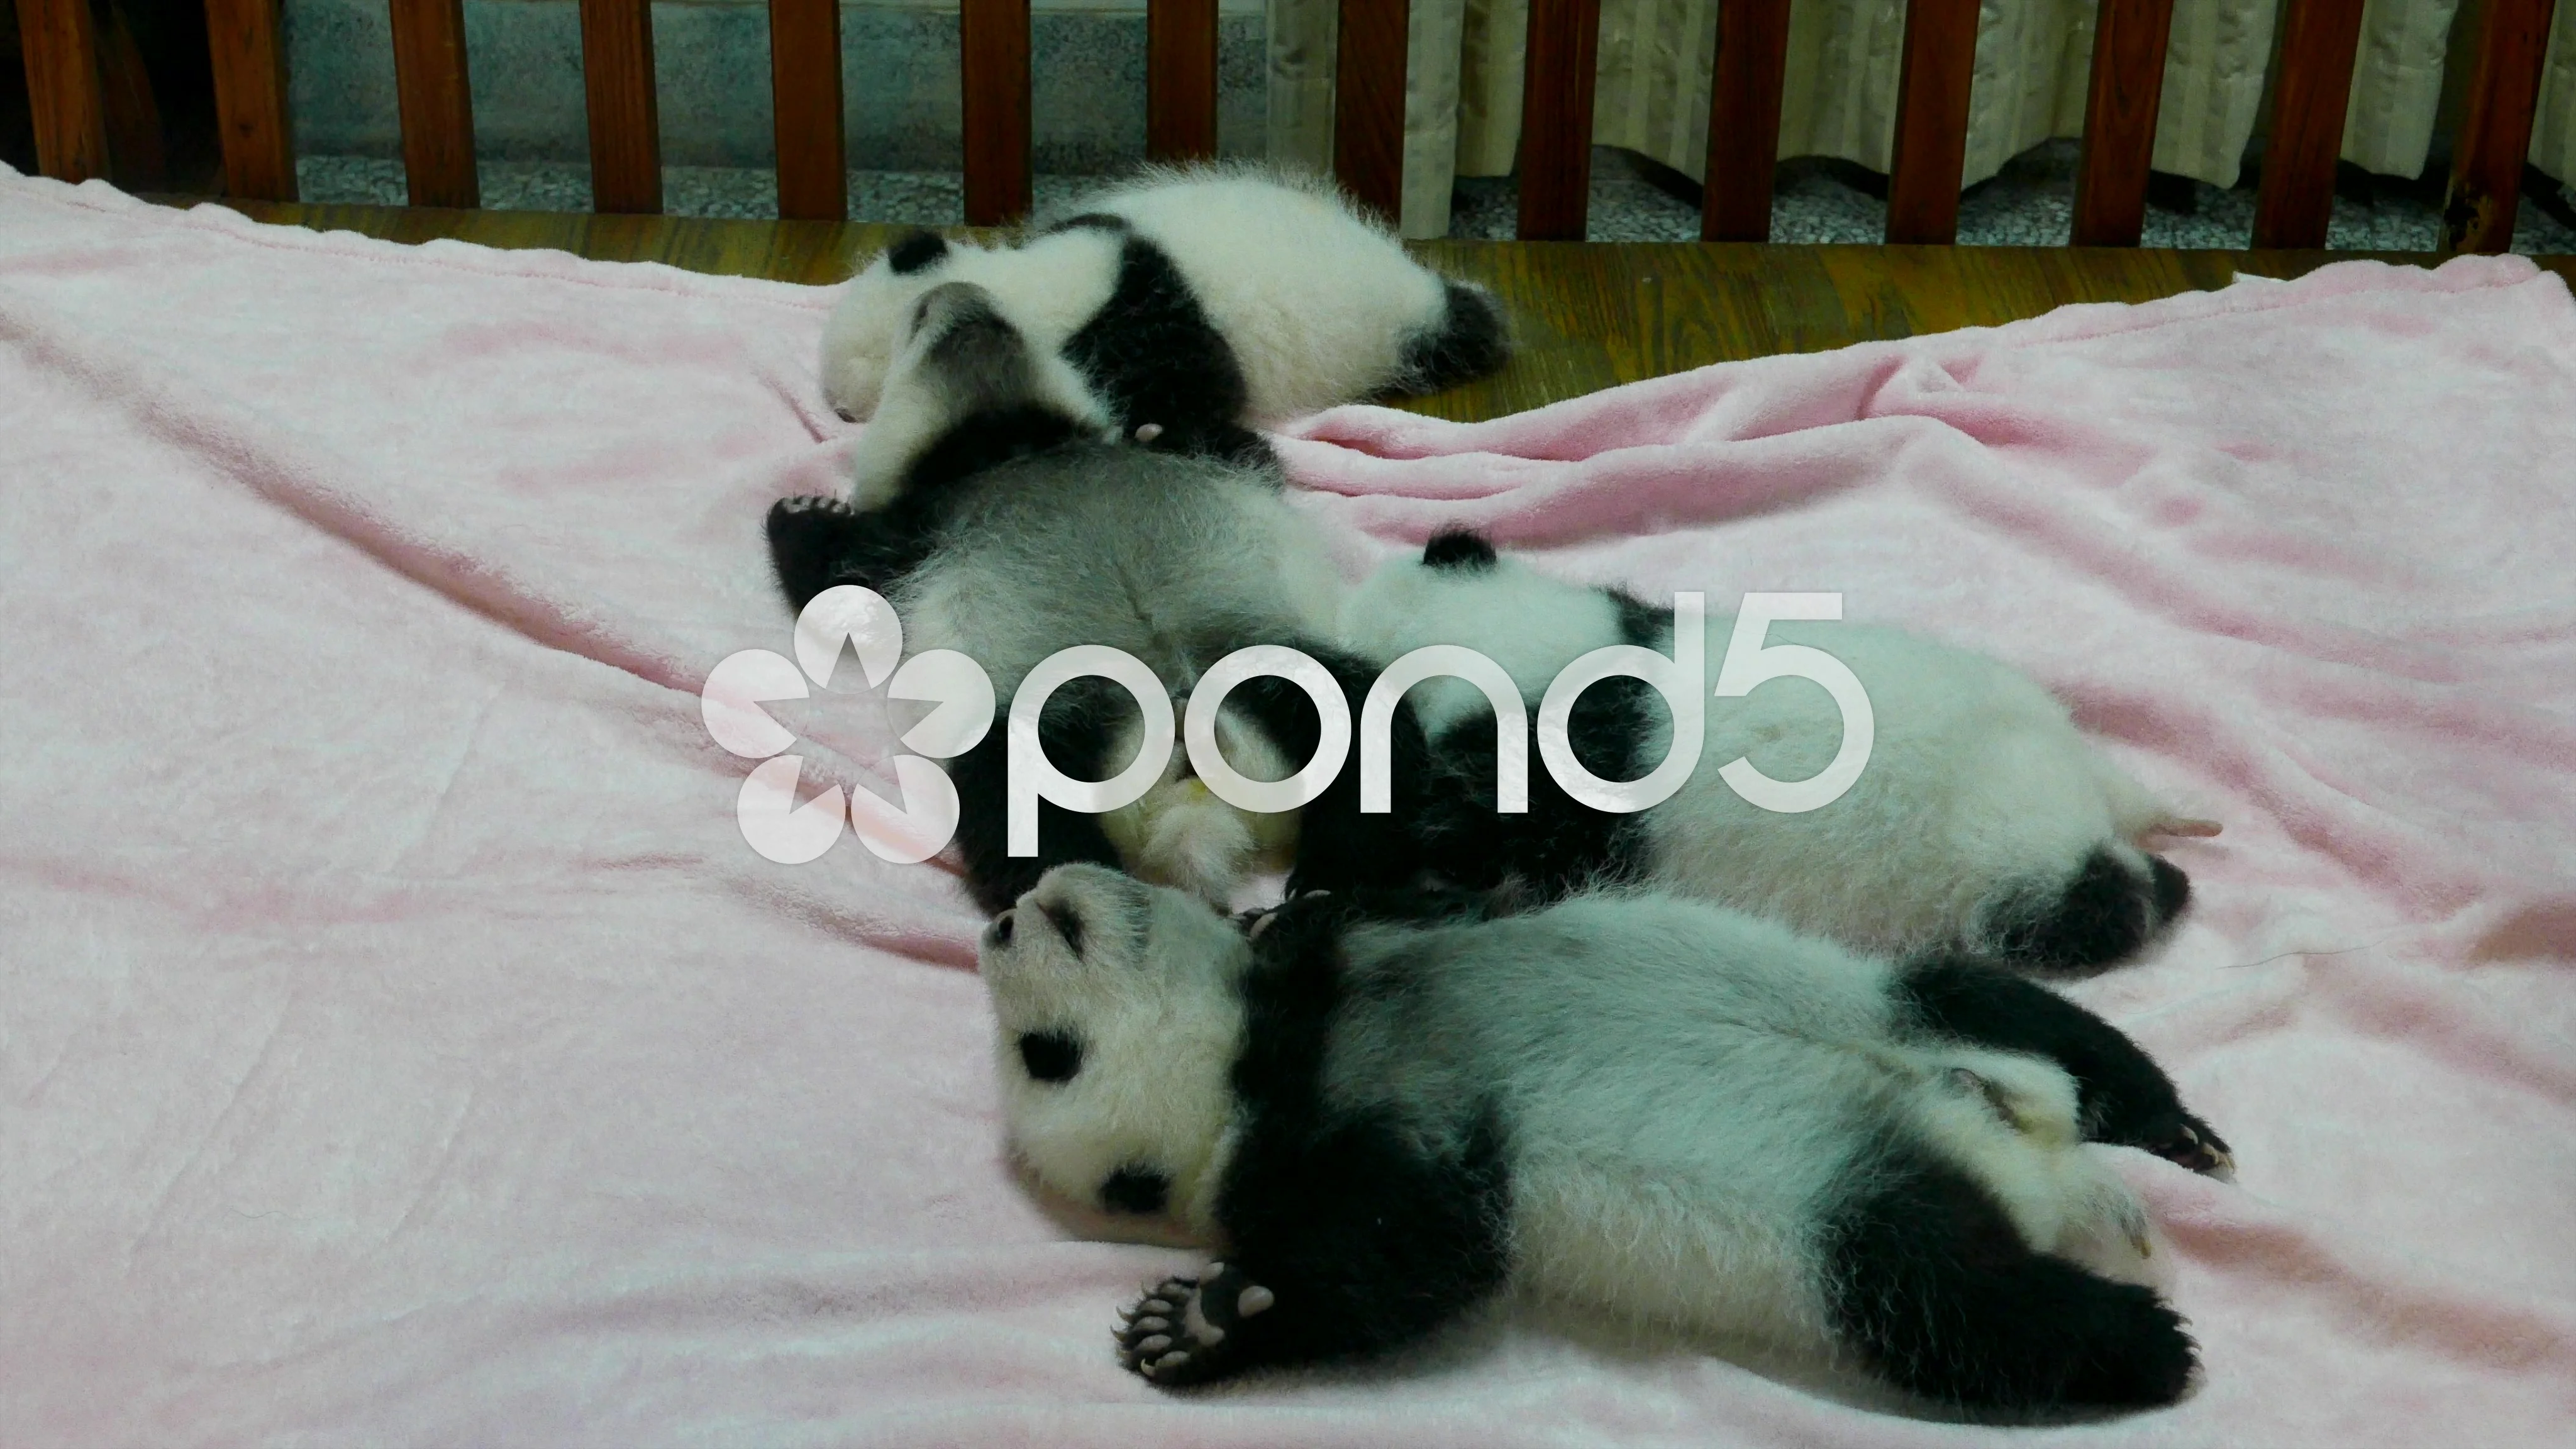 sleeping baby pandas